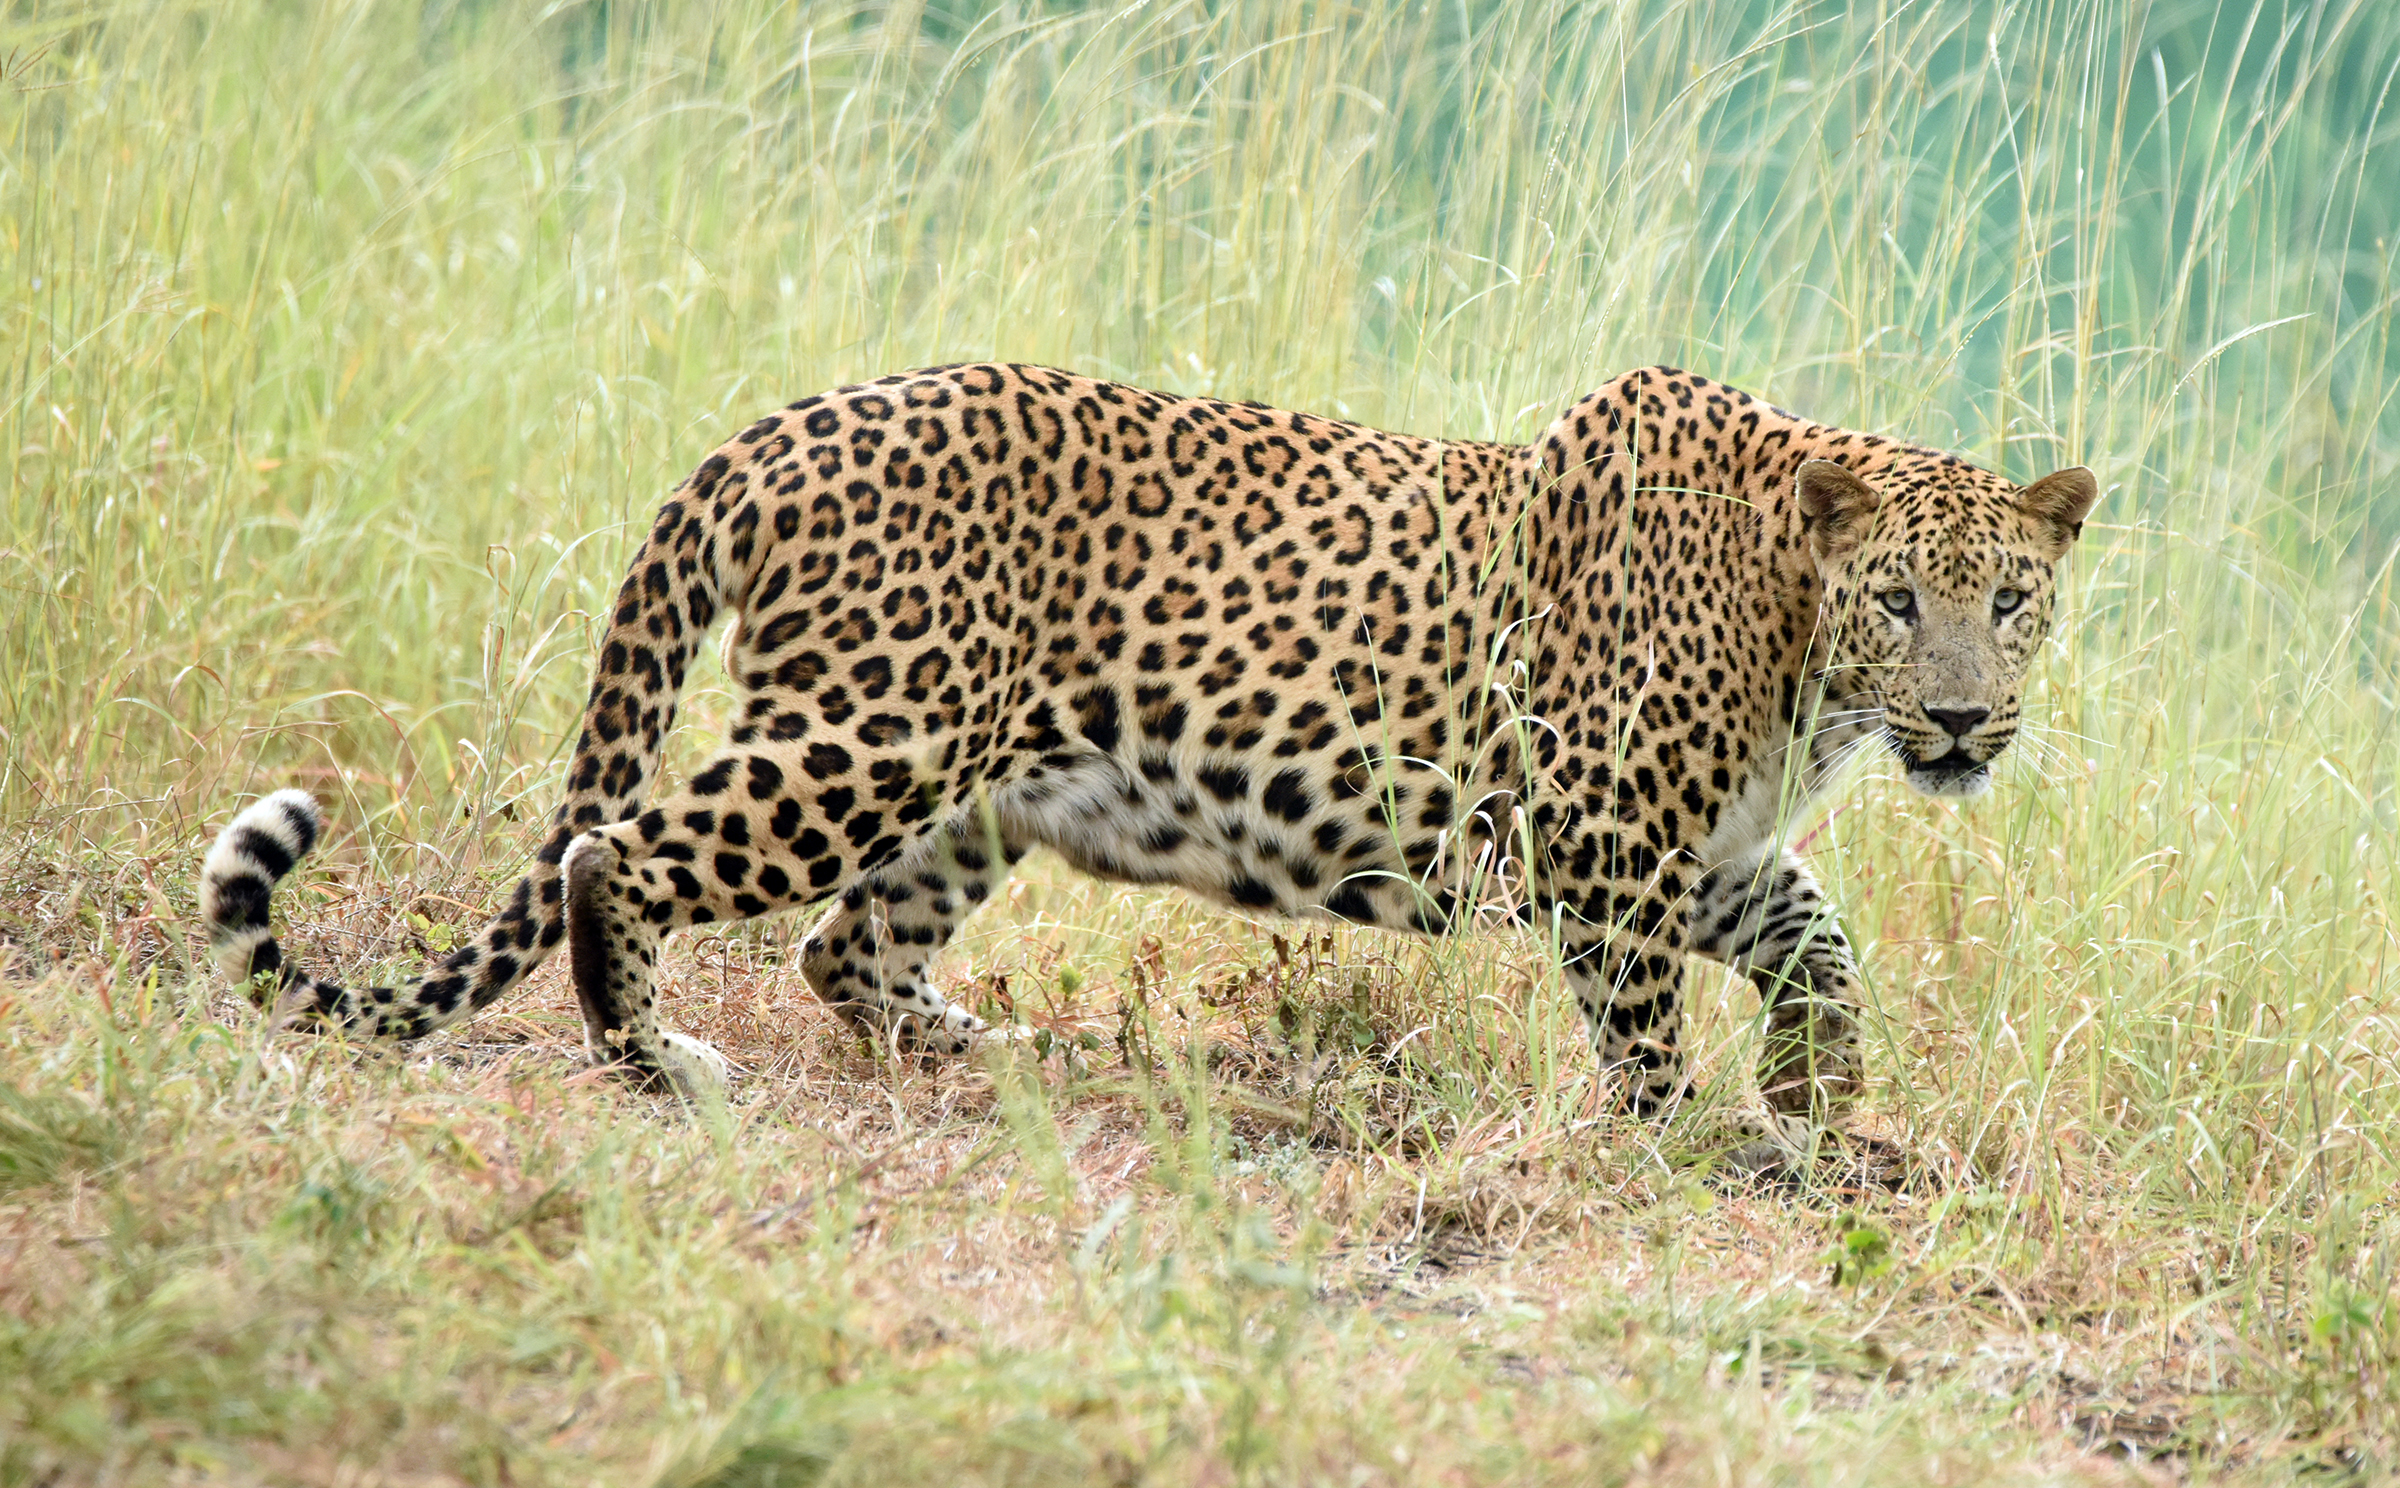 Indian Leopard at Sasan Gir